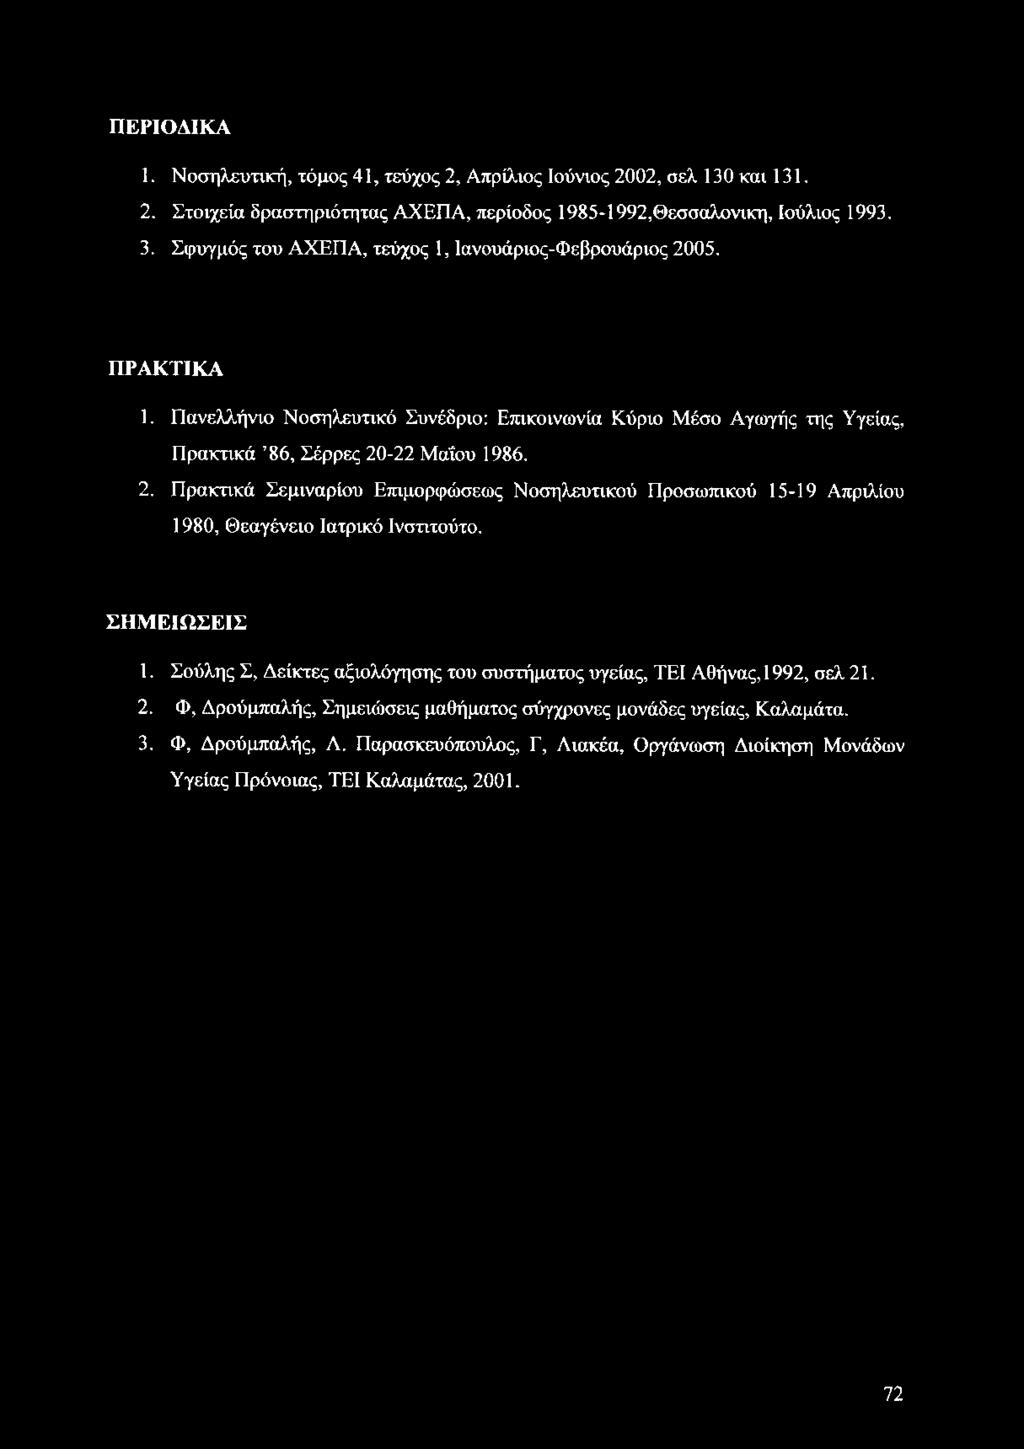 ΣΗΜΕΙΩΣΕΙΣ 1. Σούλης Σ, Δείκτες αξιολόγησης του συστήματος υγείας, ΤΕΙ Αθήνας, 1992, σελ 21. 2. Φ, Δρούμπαλής, Σημειώσεις μαθήματος σύγχρονες μονάδες υγείας, Καλαμάτα. 3.